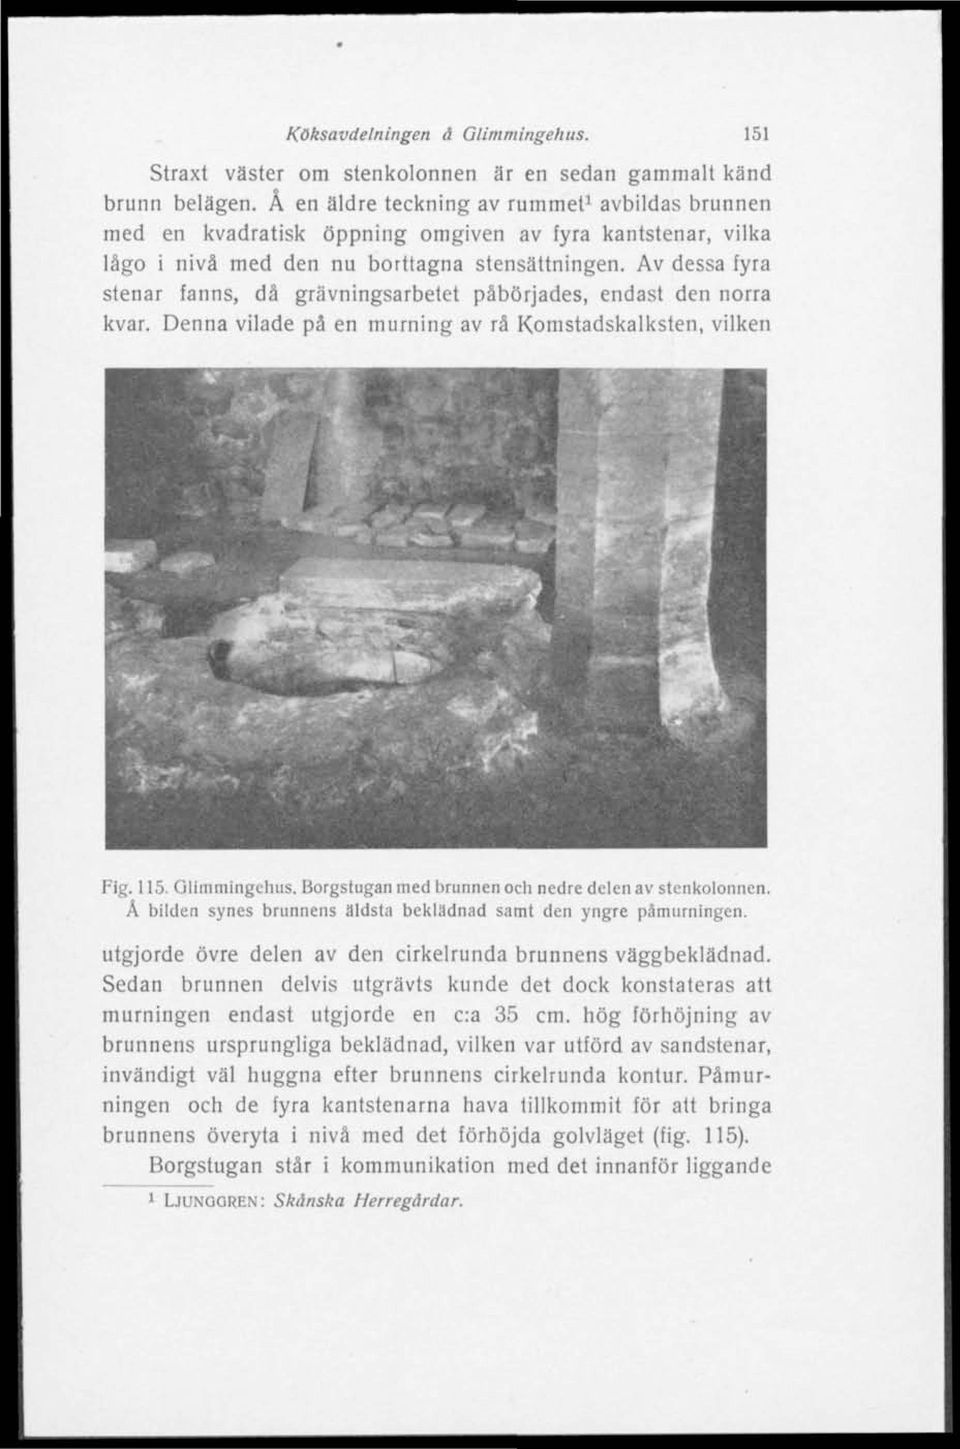 Av dessa fyra stenar fanns, då grävningsarbetet påbörjades, endast den norra kvar. Denna vilade på en murning av rå Komstadskalksten, vilken Fig. 115. Glimmingehus.